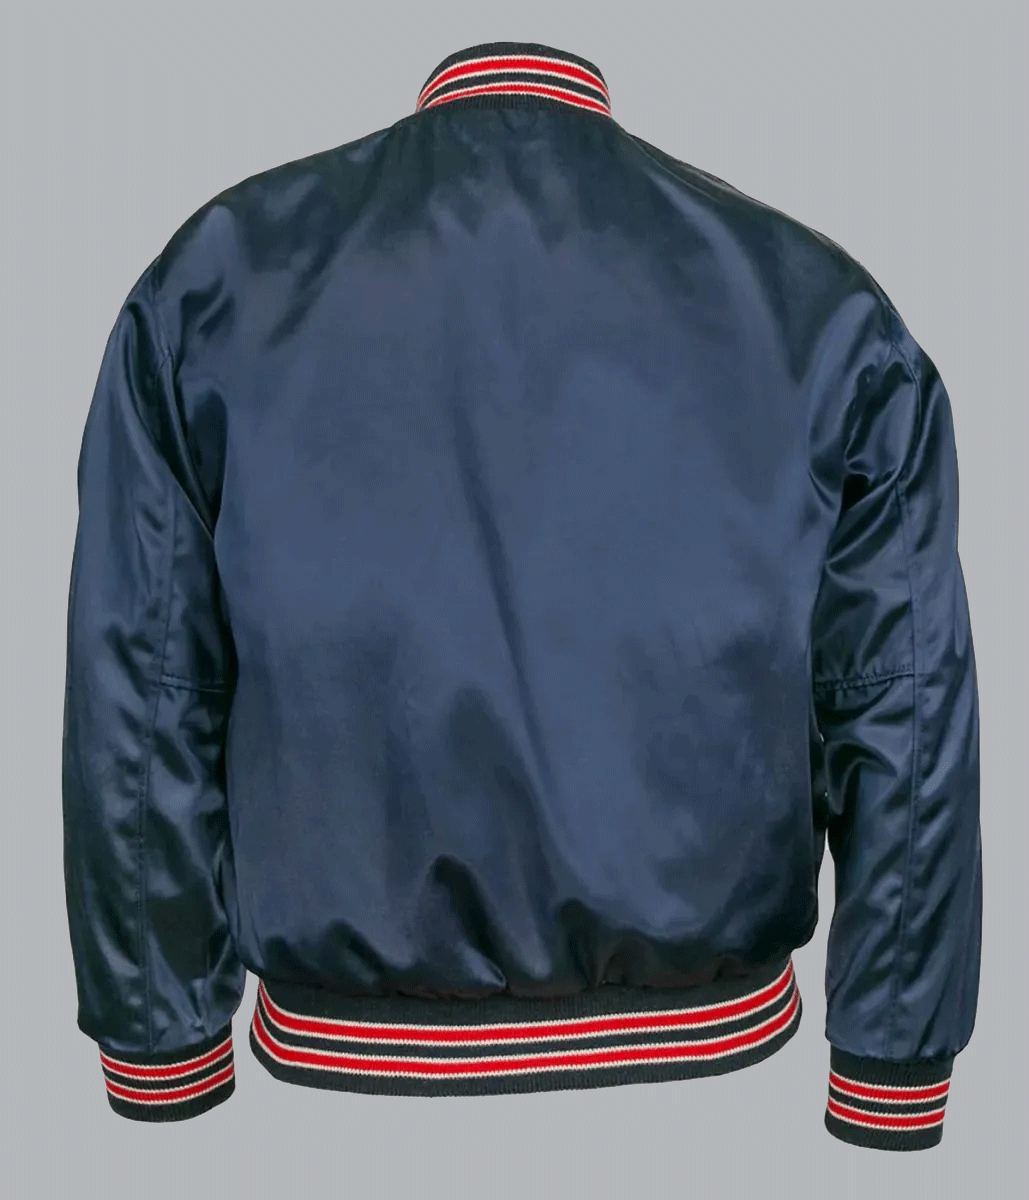 Navy Blue Kansas City Athletics Jacket - A2 Jackets